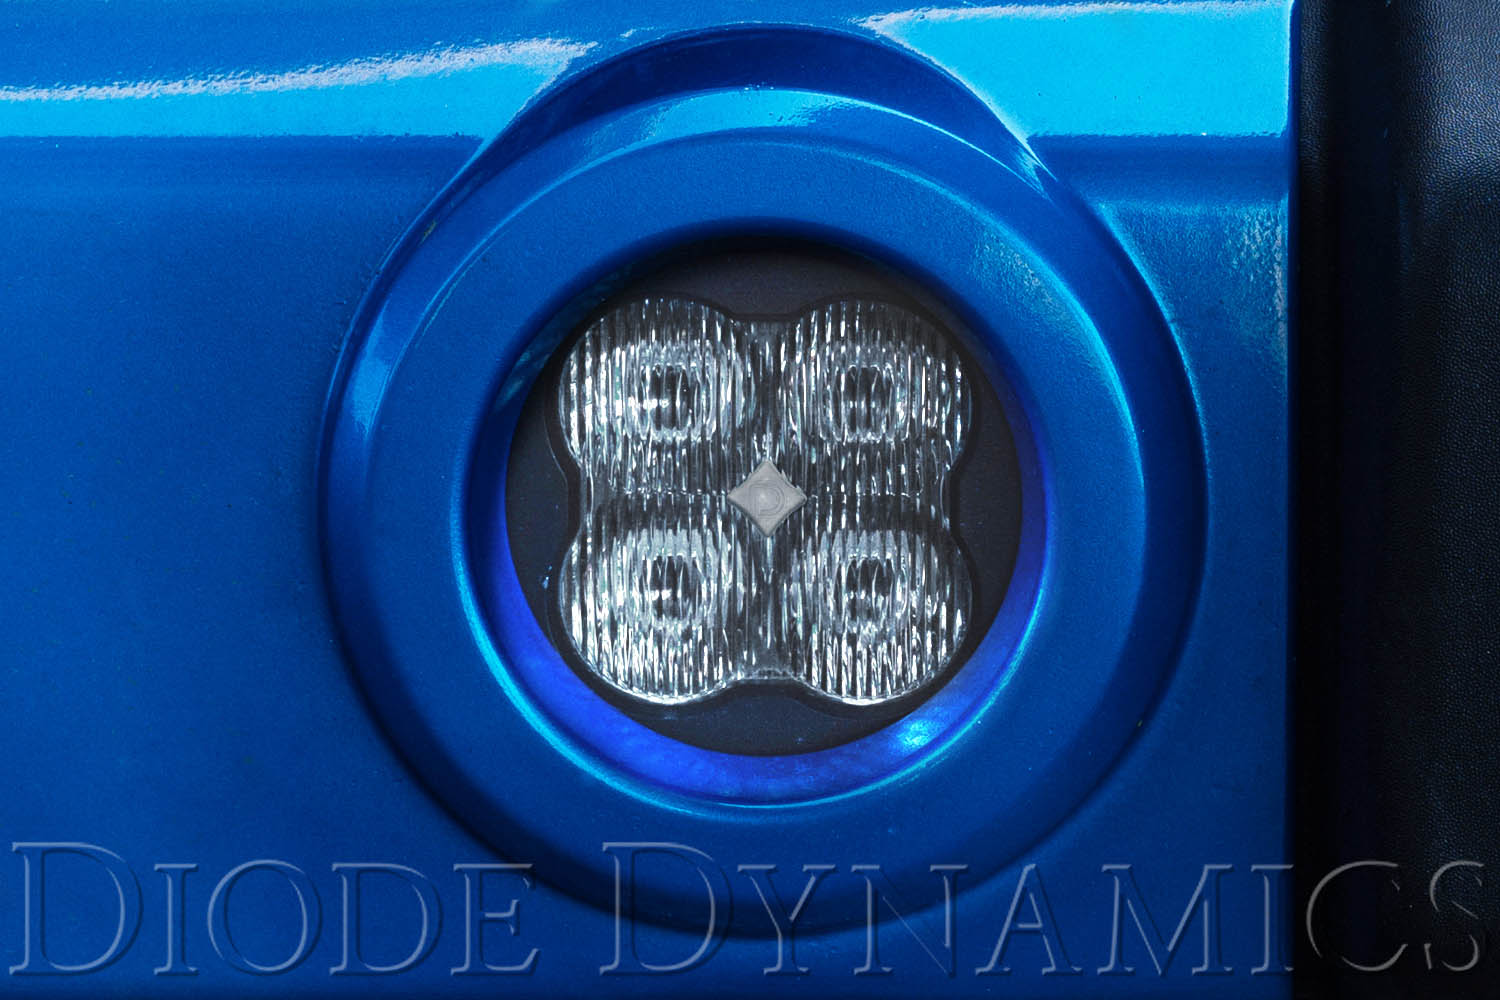 SS3 LED Fog Light Kit for 2005-2007 Dodge Magnum Yellow SAE Fog Pro Diode Dynamics